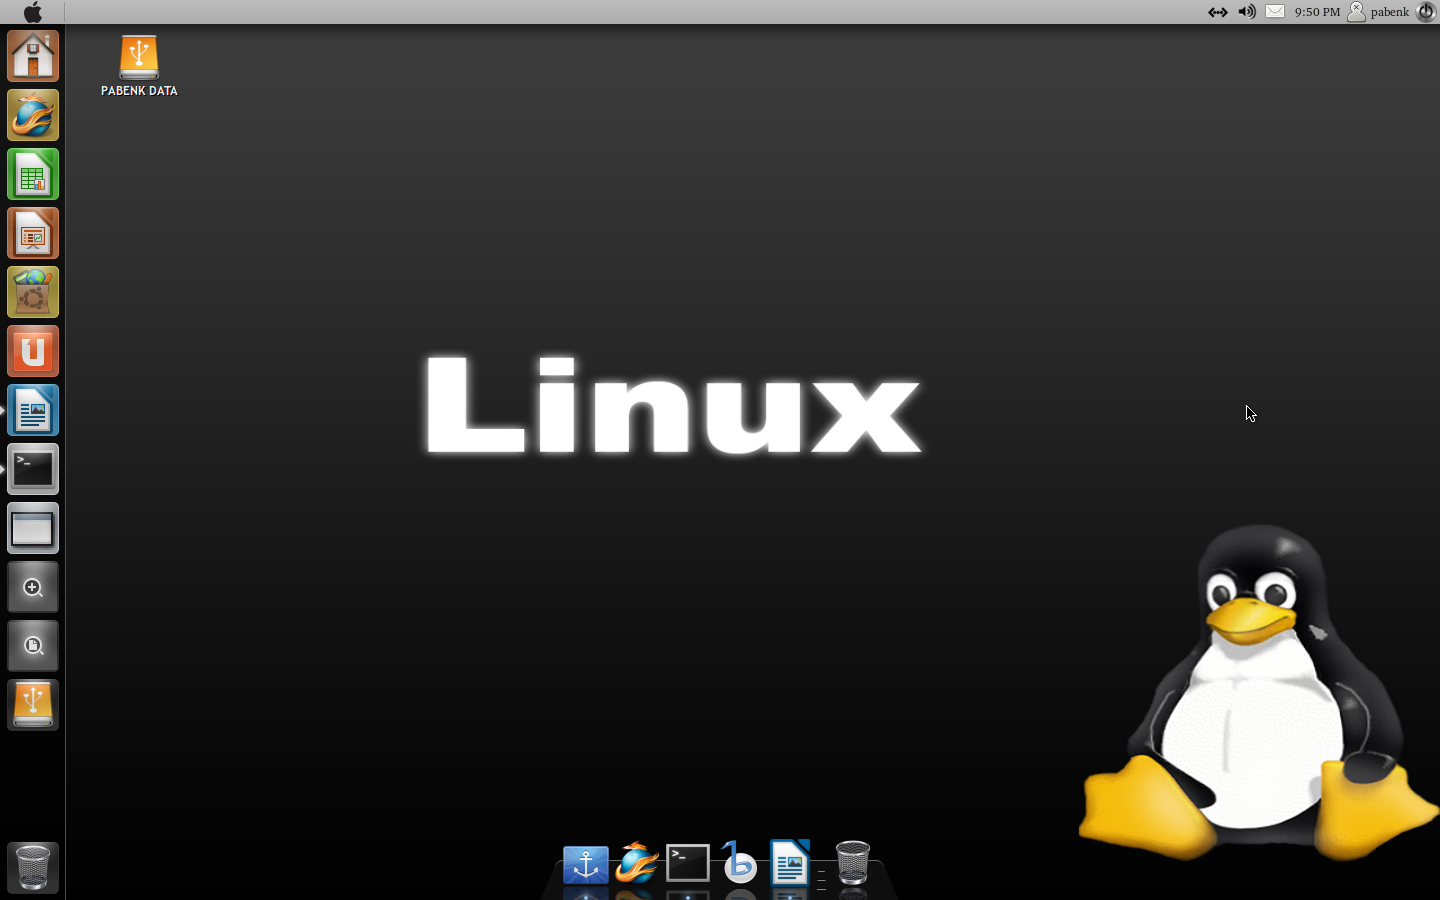 Linux перенаправления. Линекс опереционая система. Линукс Операционная система. Как выглядит Операционная система Linux. Линекс Операционная системп.